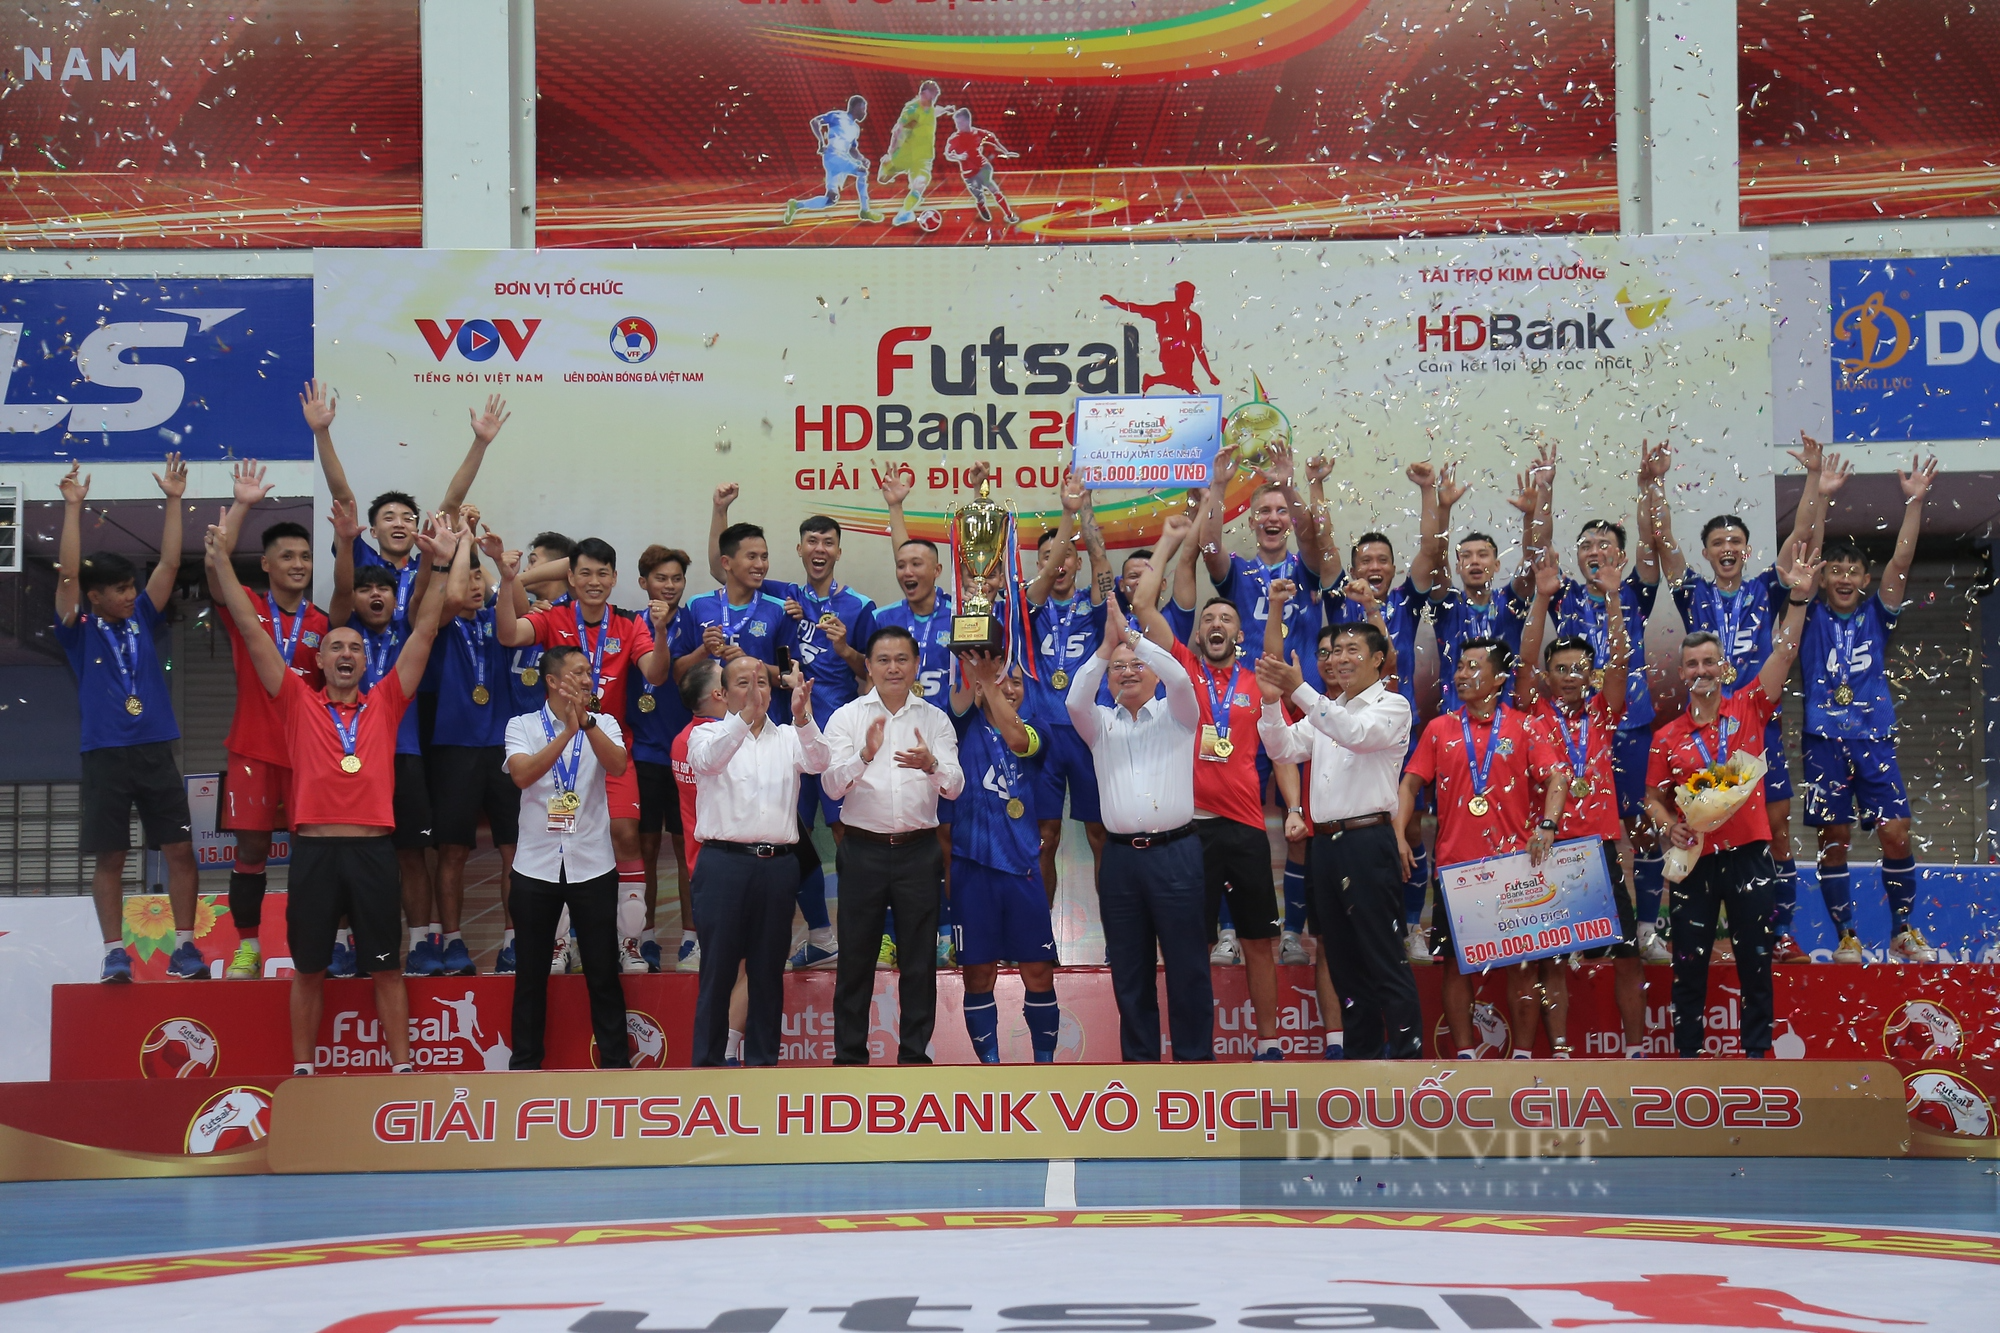 Hoà thót tim phút cuối, Thái Sơn Nam lên ngôi vô địch giải futsal quốc gia - Ảnh 4.